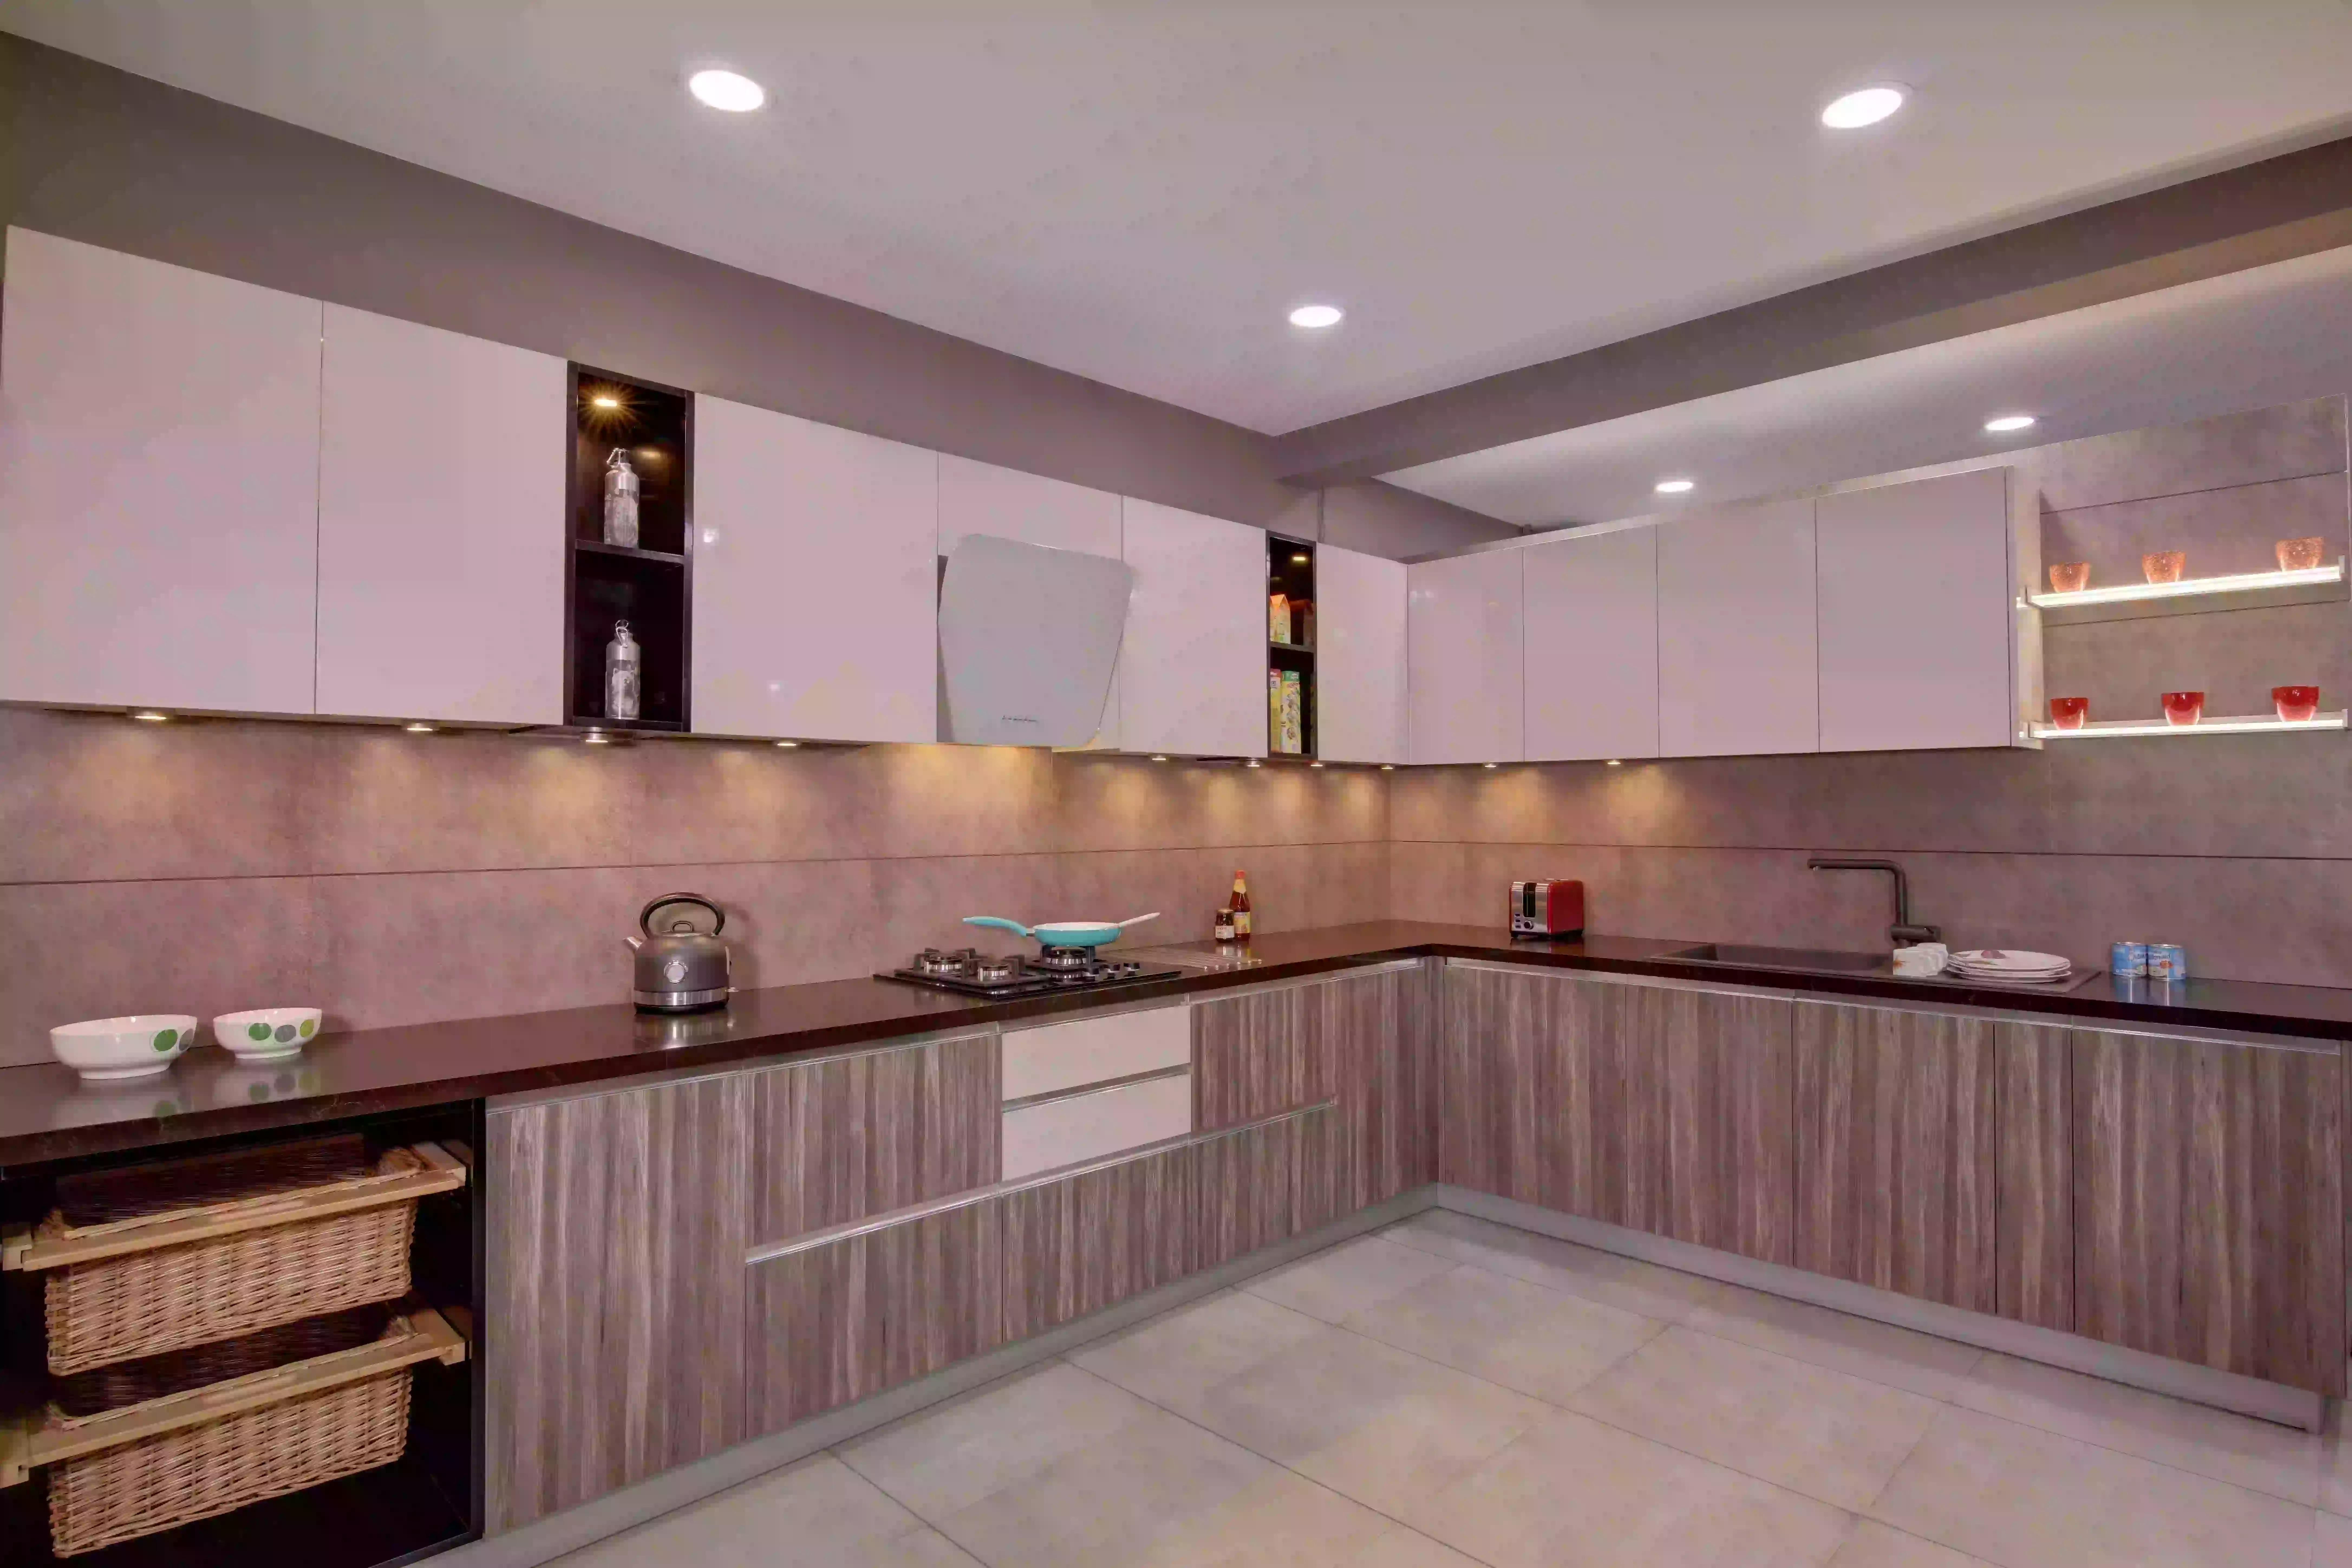 Modular Kitchen Wicker Basket  Modular kitchen design, Modular kitchen  interior, Modular